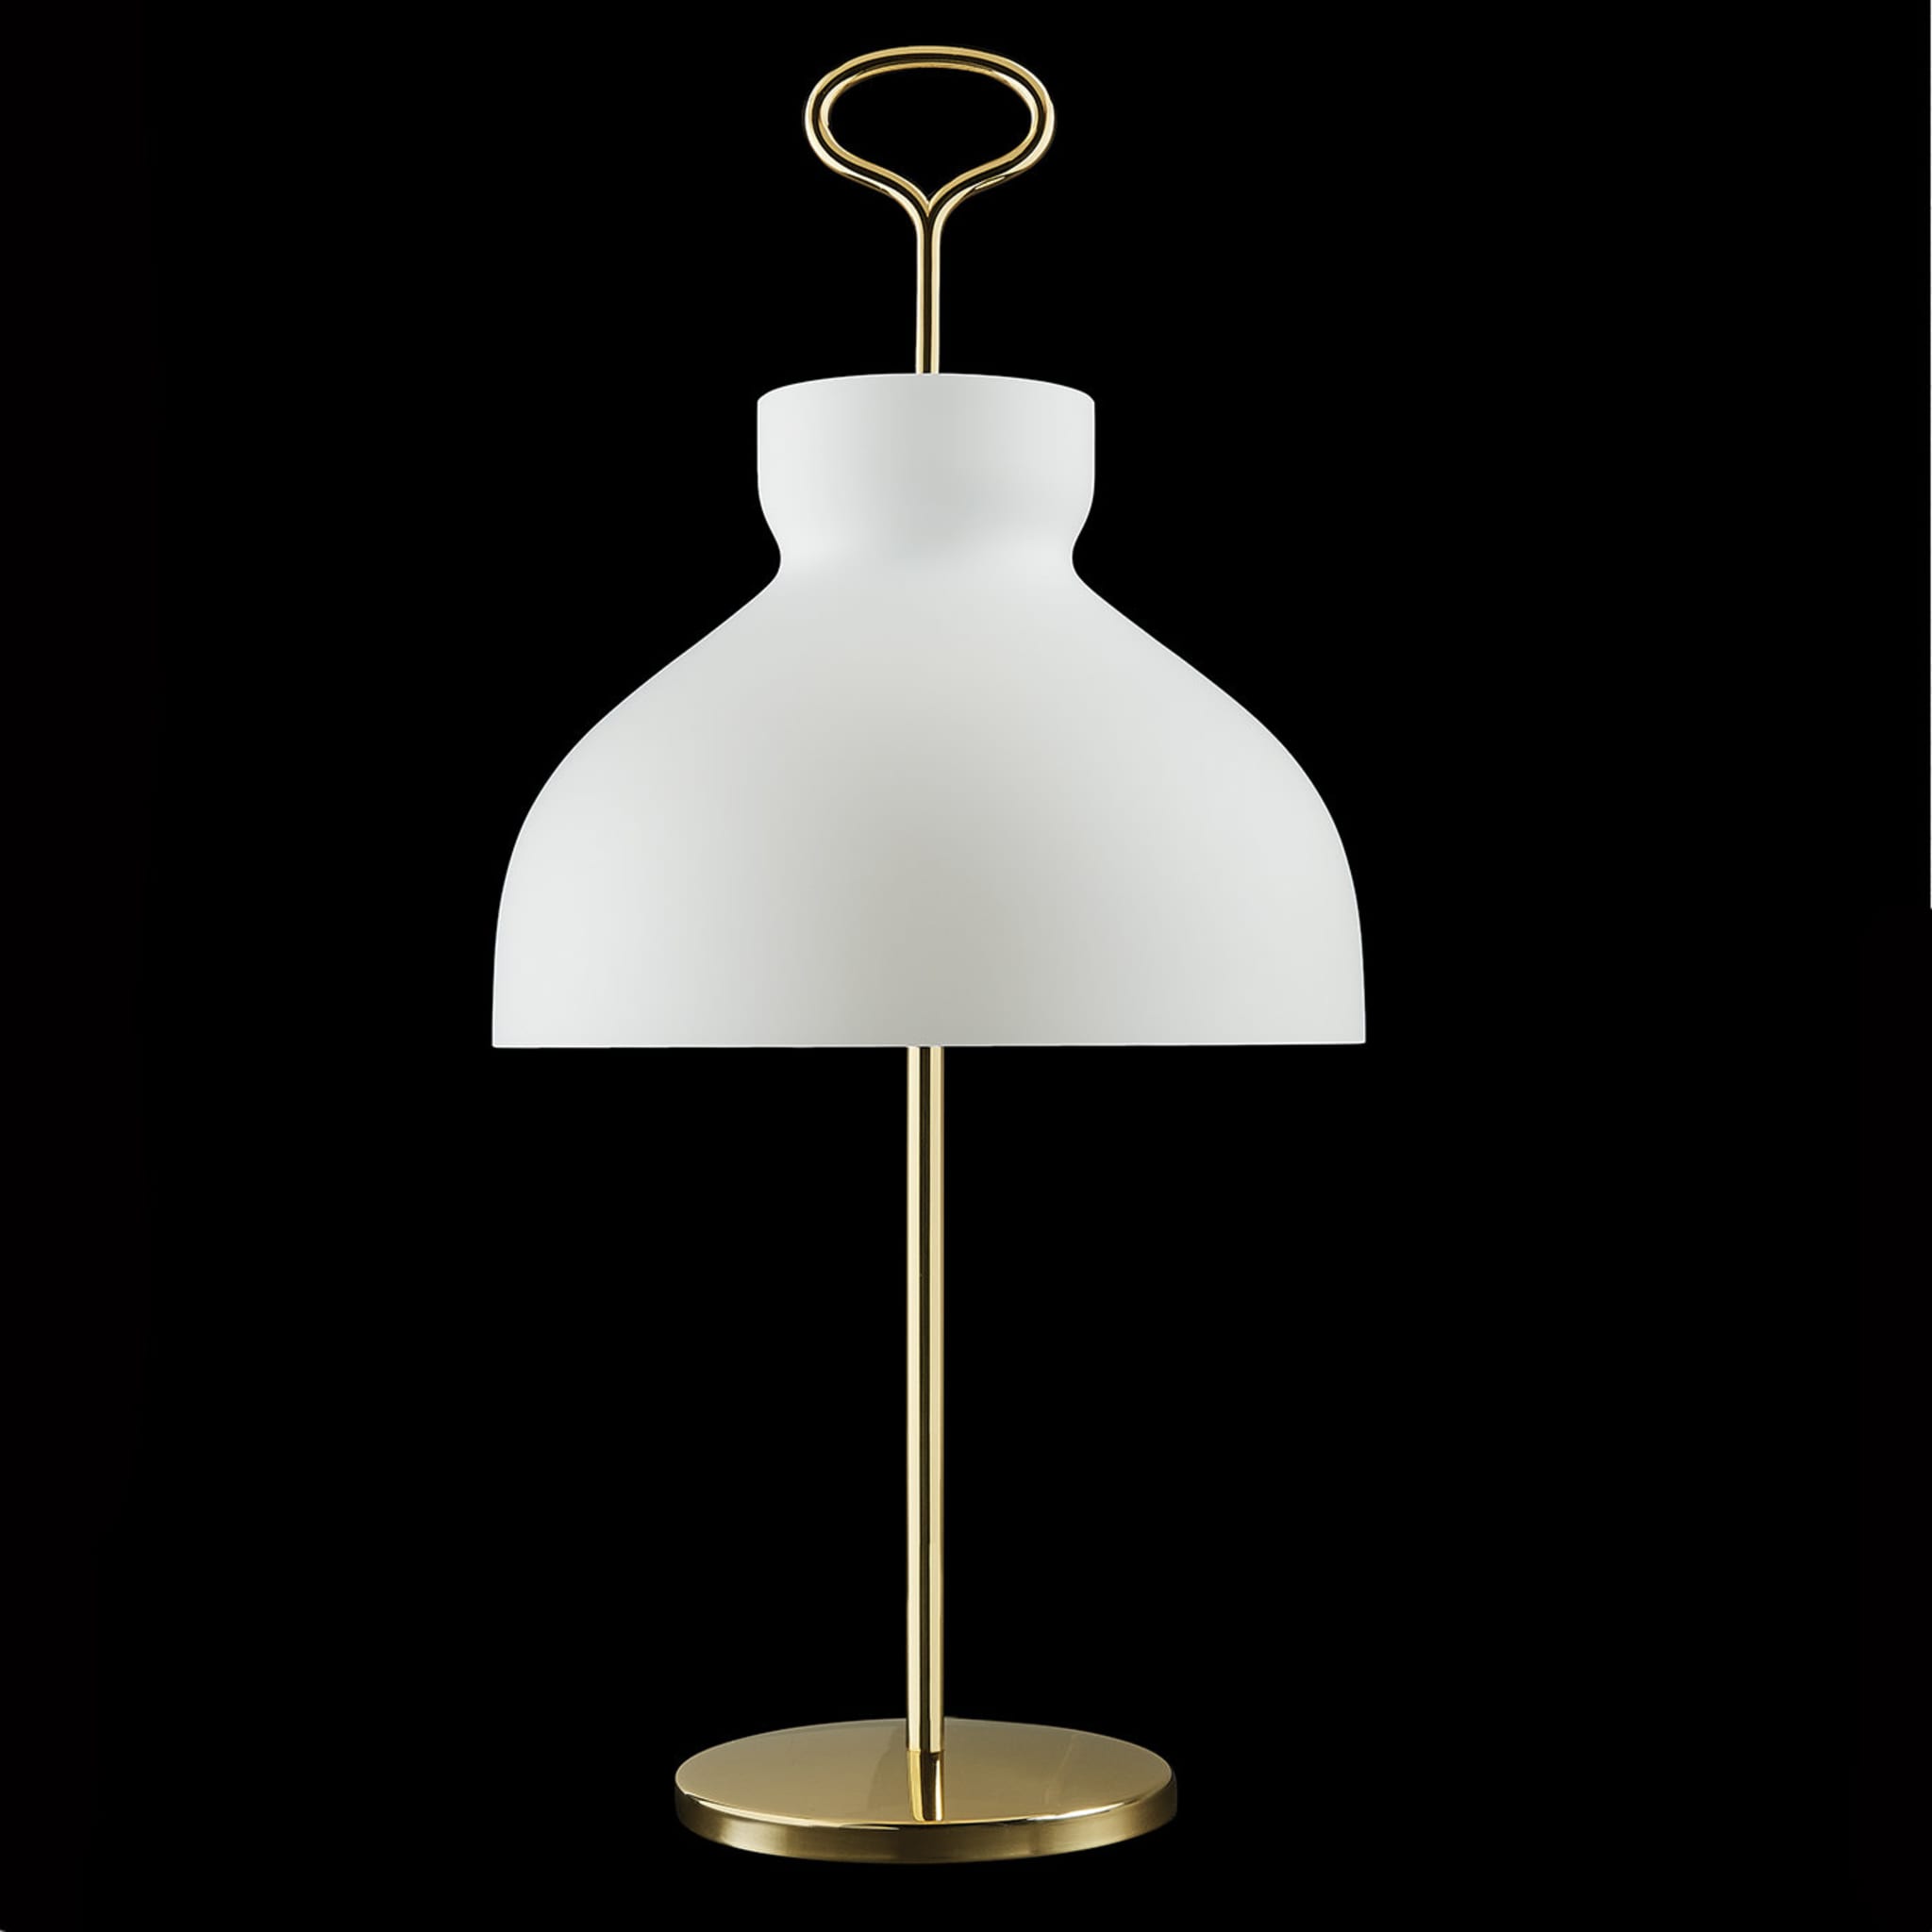 Arenzano Table Lamp by Ignazio Gardella - Alternative view 3